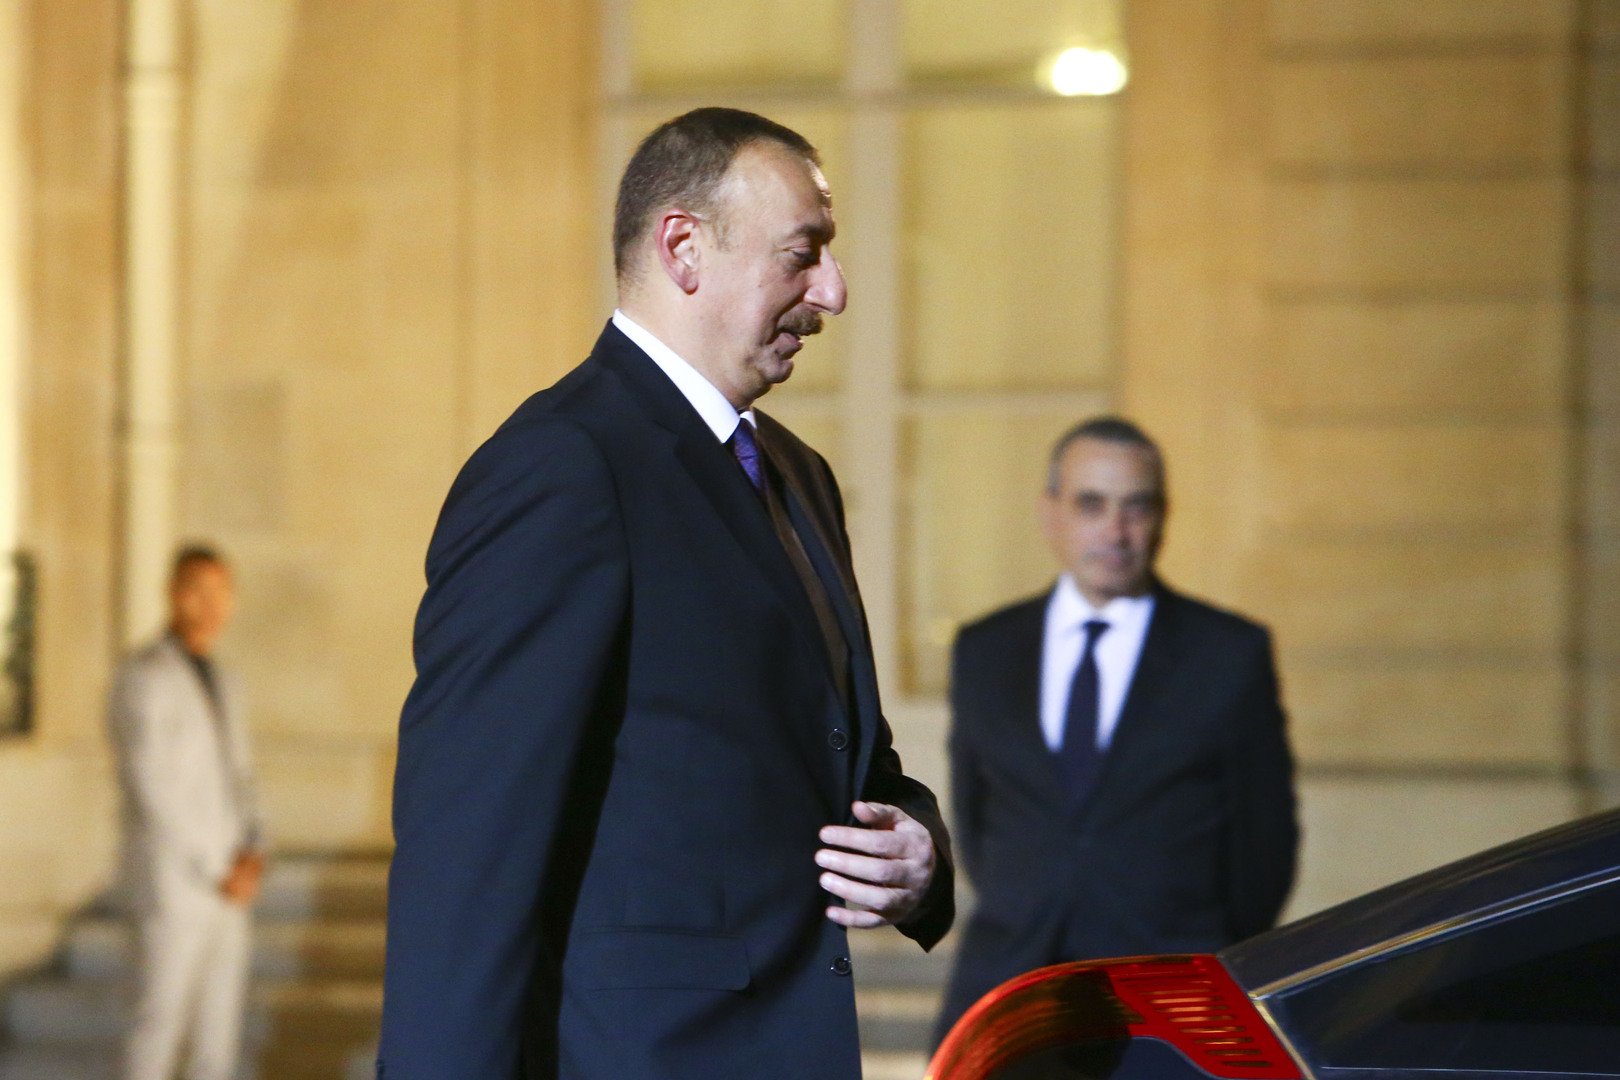 علييف: لا حاجة للدعوات إلى الحوار بشأن قره باغ وأذربيجان ستستعيد وحدة أراضيها